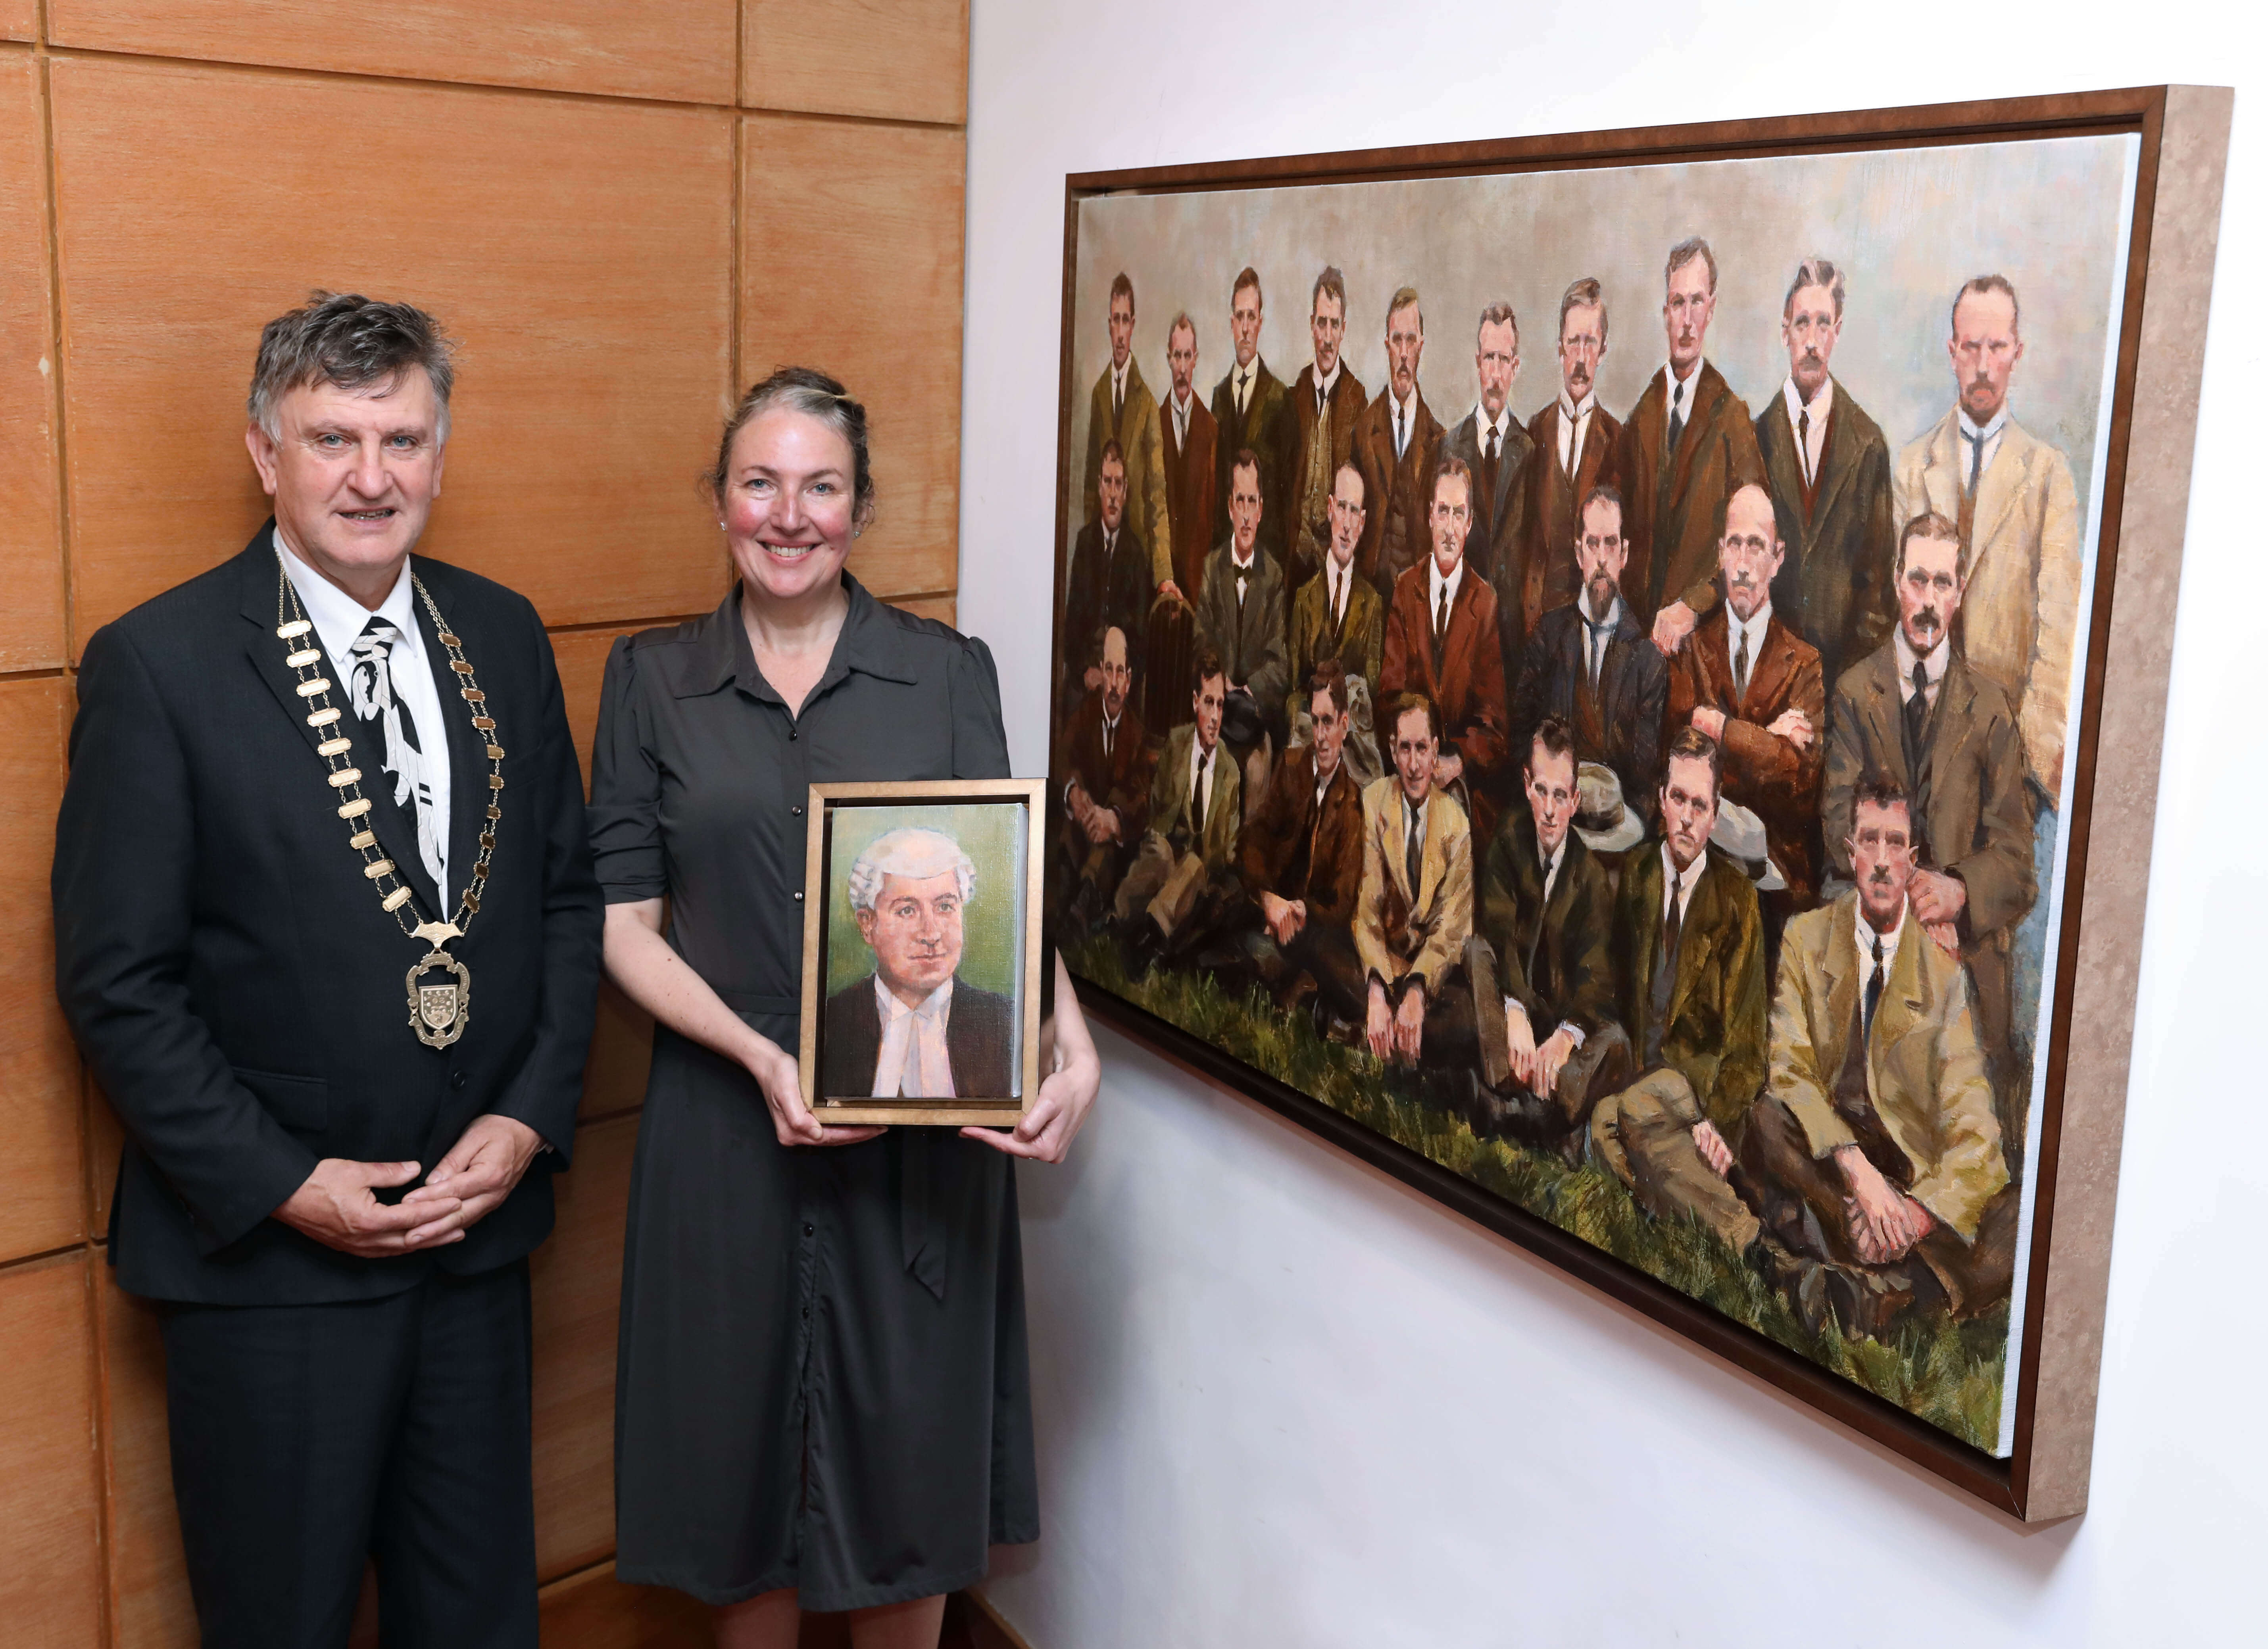 Sligo County Council Decade of Centenaries programme commemorates first Republican County Council